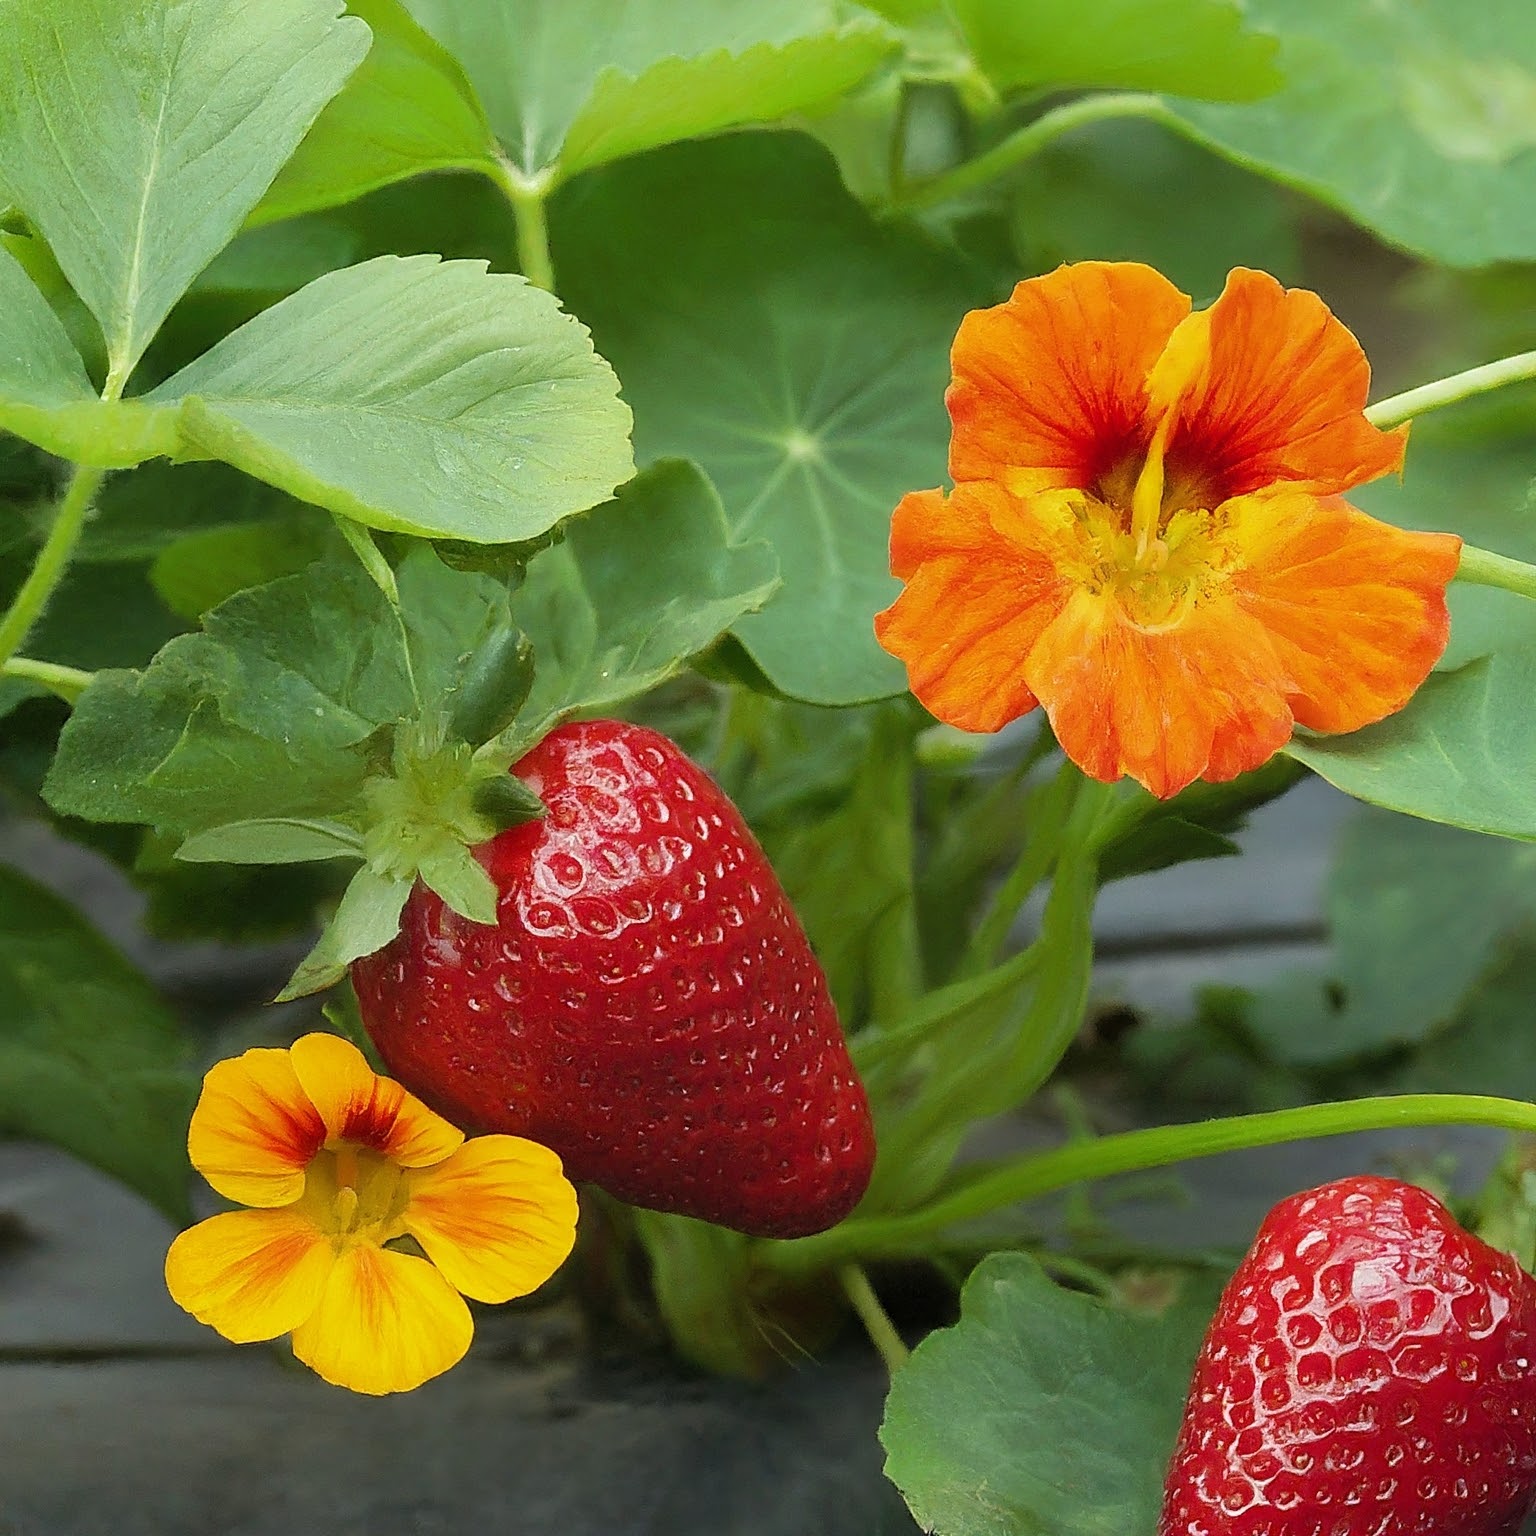 Growing Juicy Strawberries & Stunning Flowers